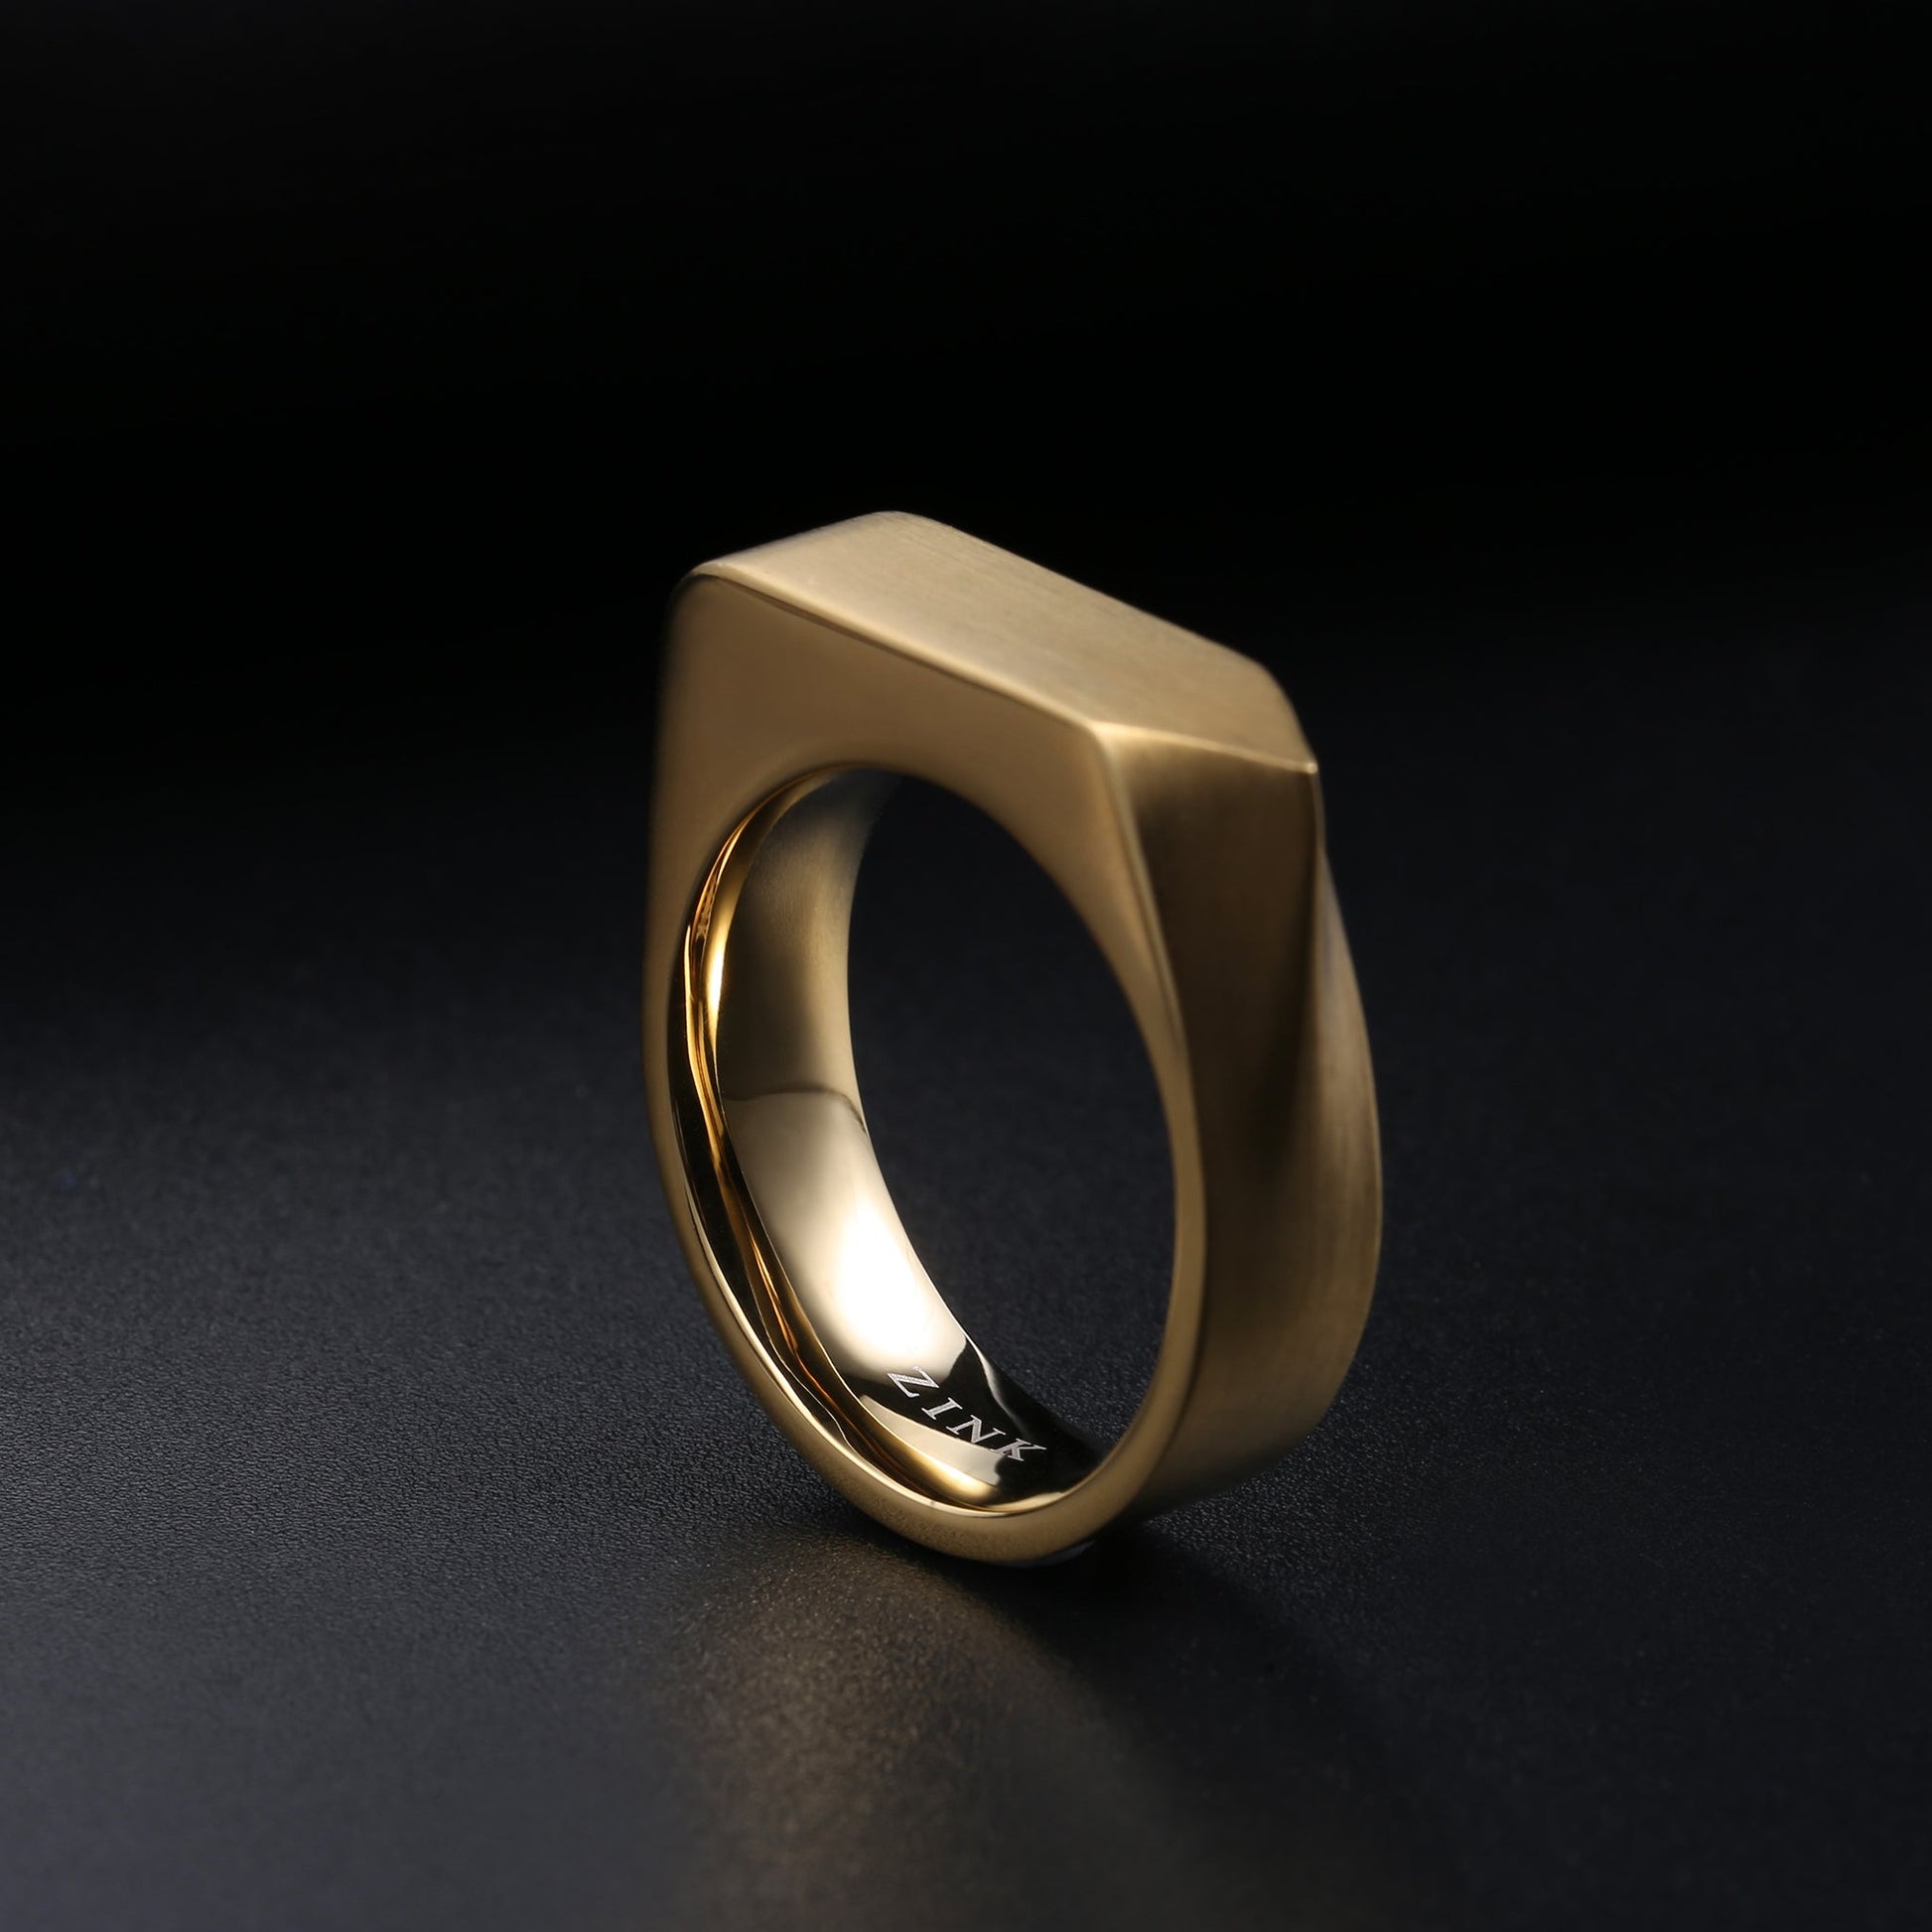 ZJRG027GM ZINK Men's Ring